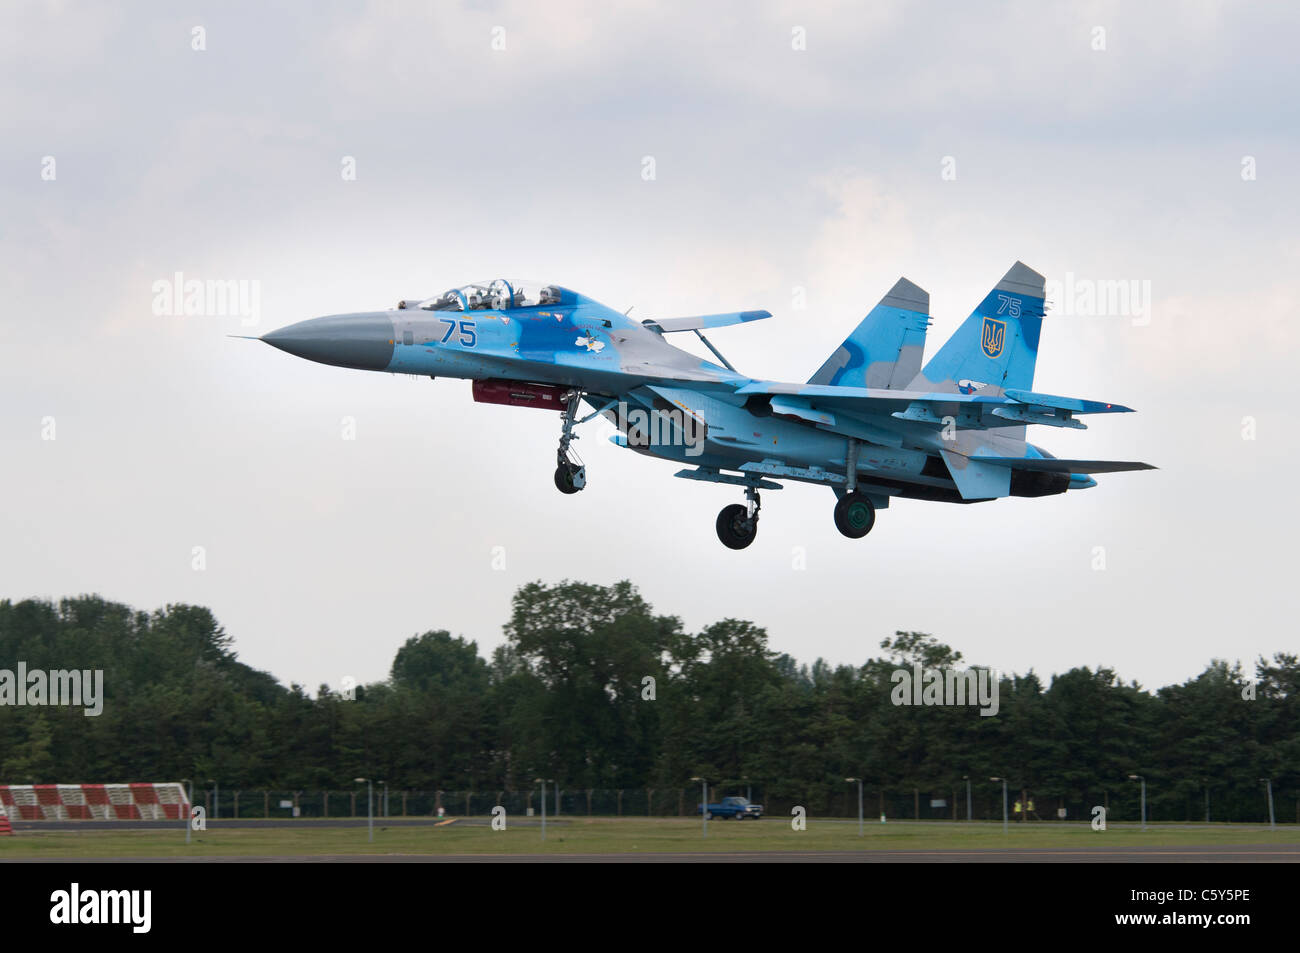 L'Armée de l'air ukrainienne Sukhoi Su-27UB chasseur de supériorité aérienne de la 831st Fighter Aviation Regiment en approche finale Banque D'Images